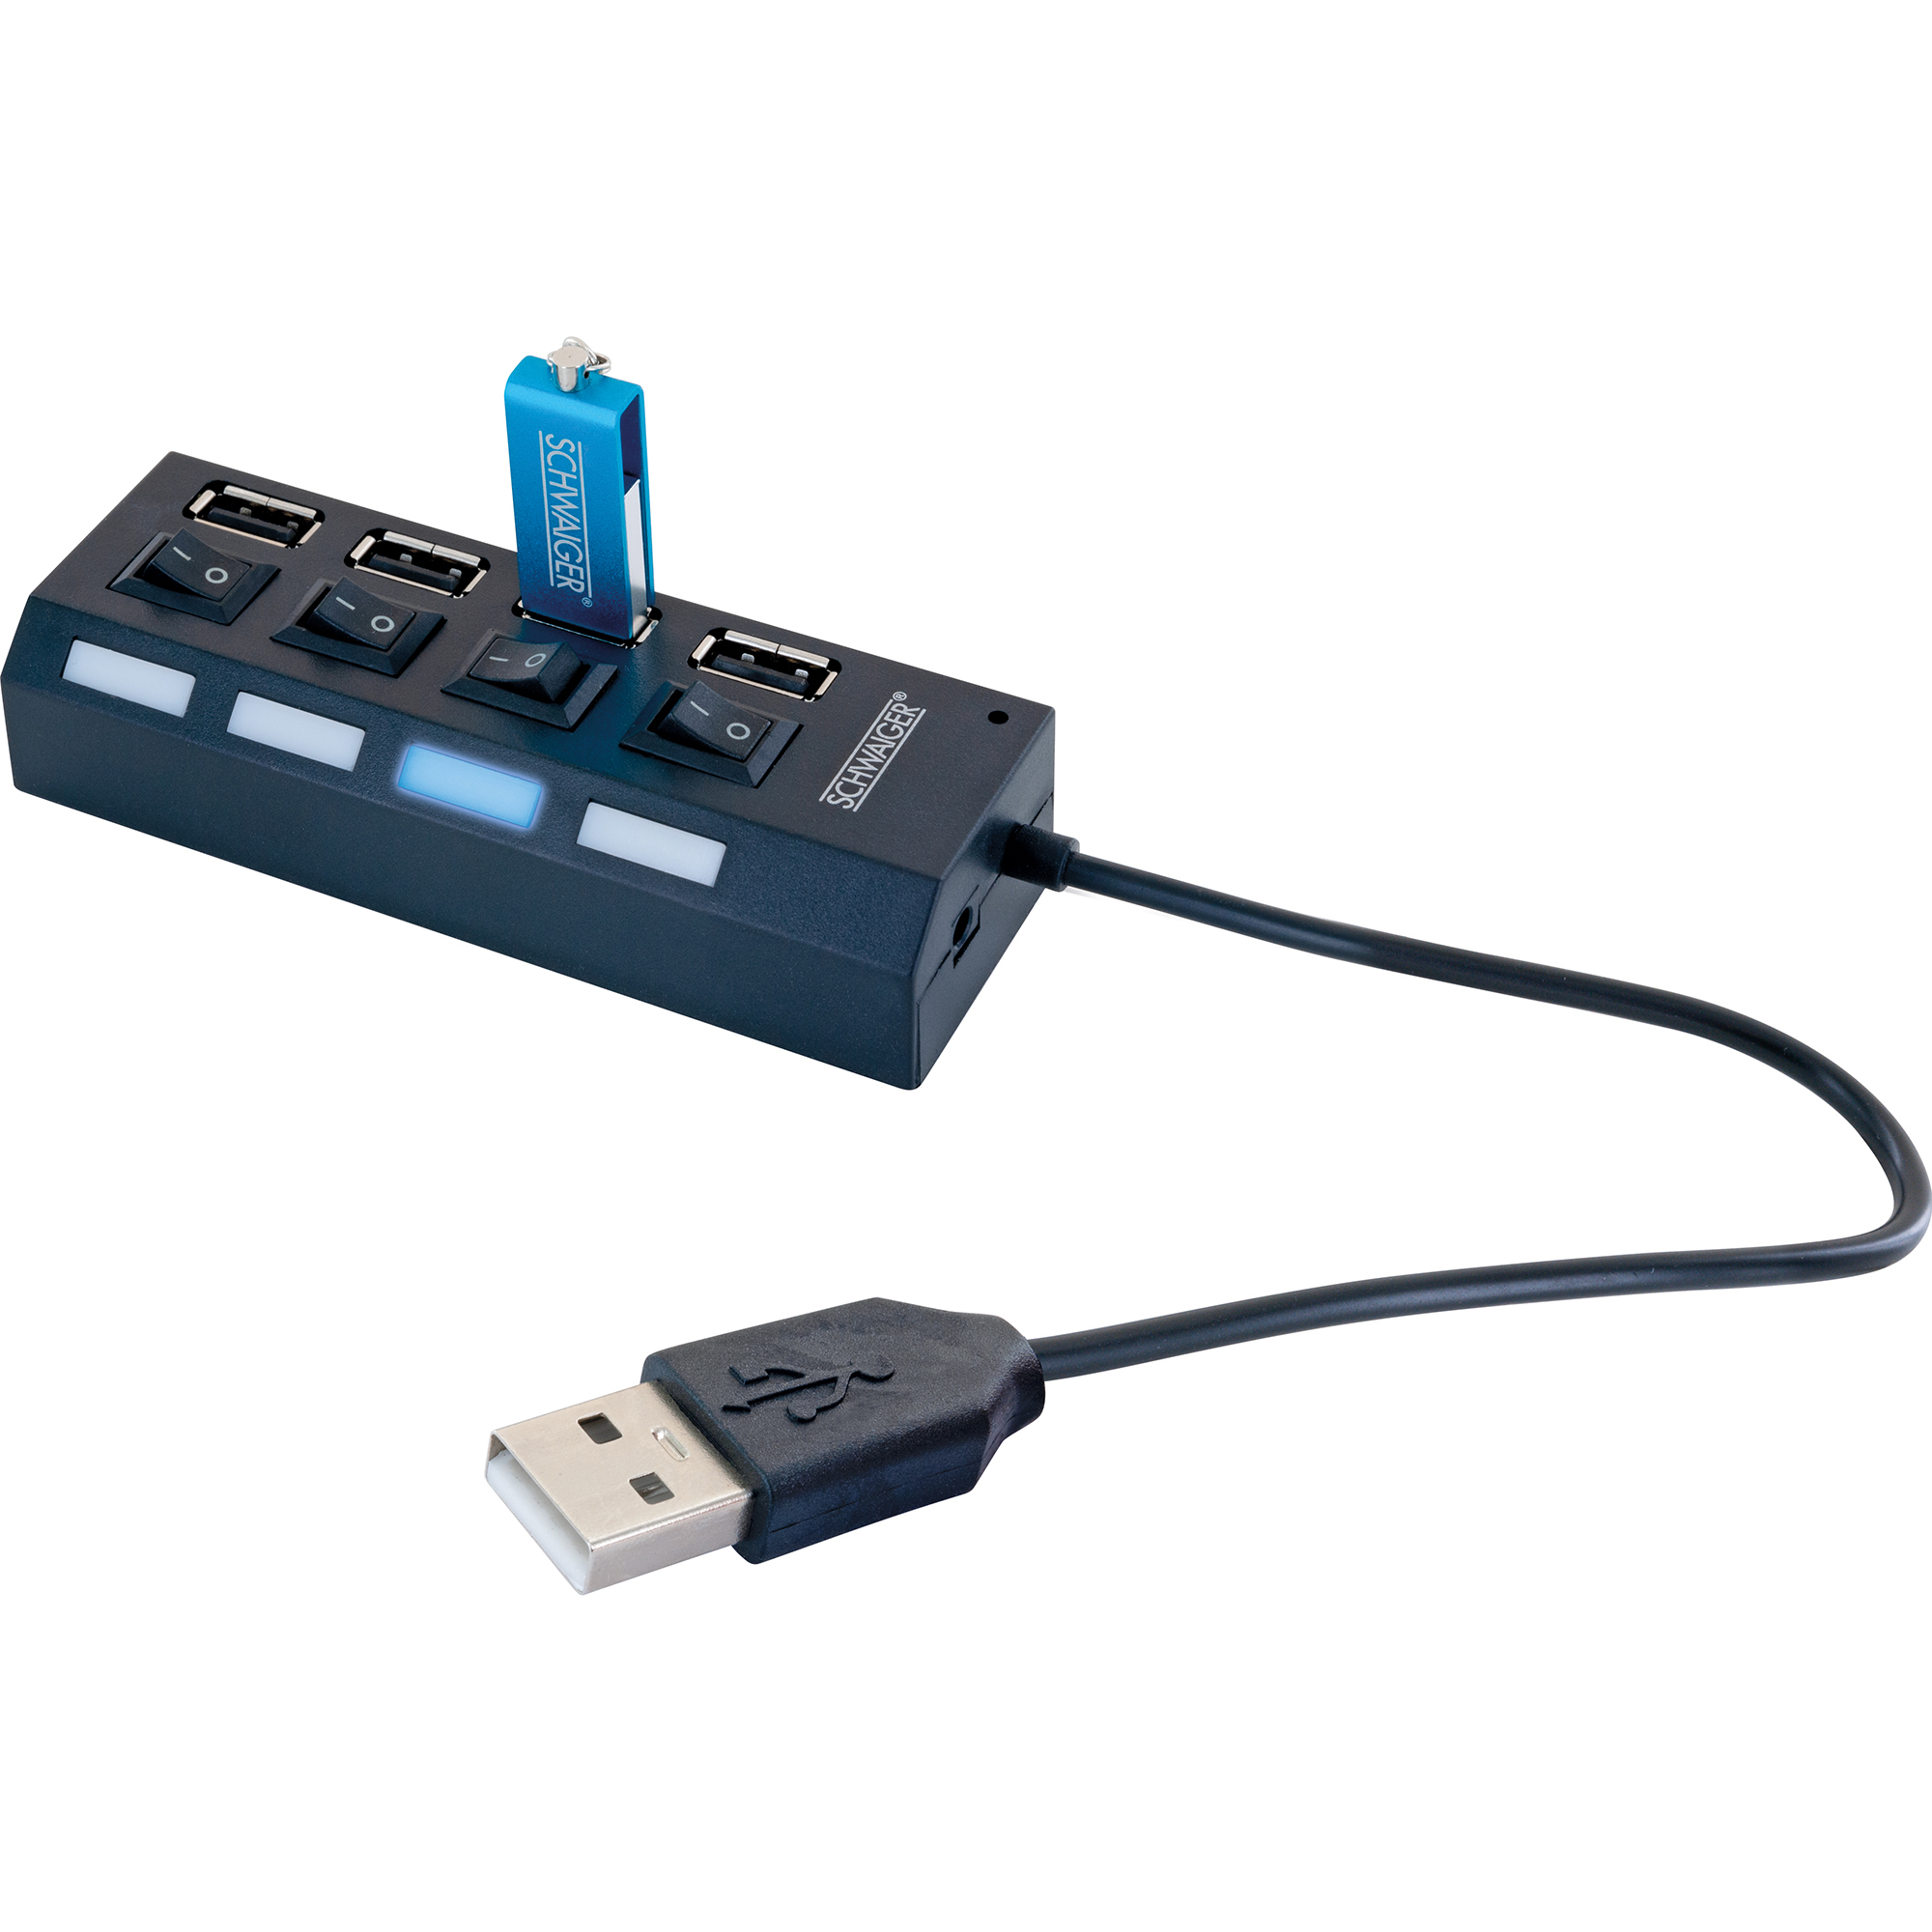 USB 2.0 HUB schwarz 4-fach mit Schaltern + product picture